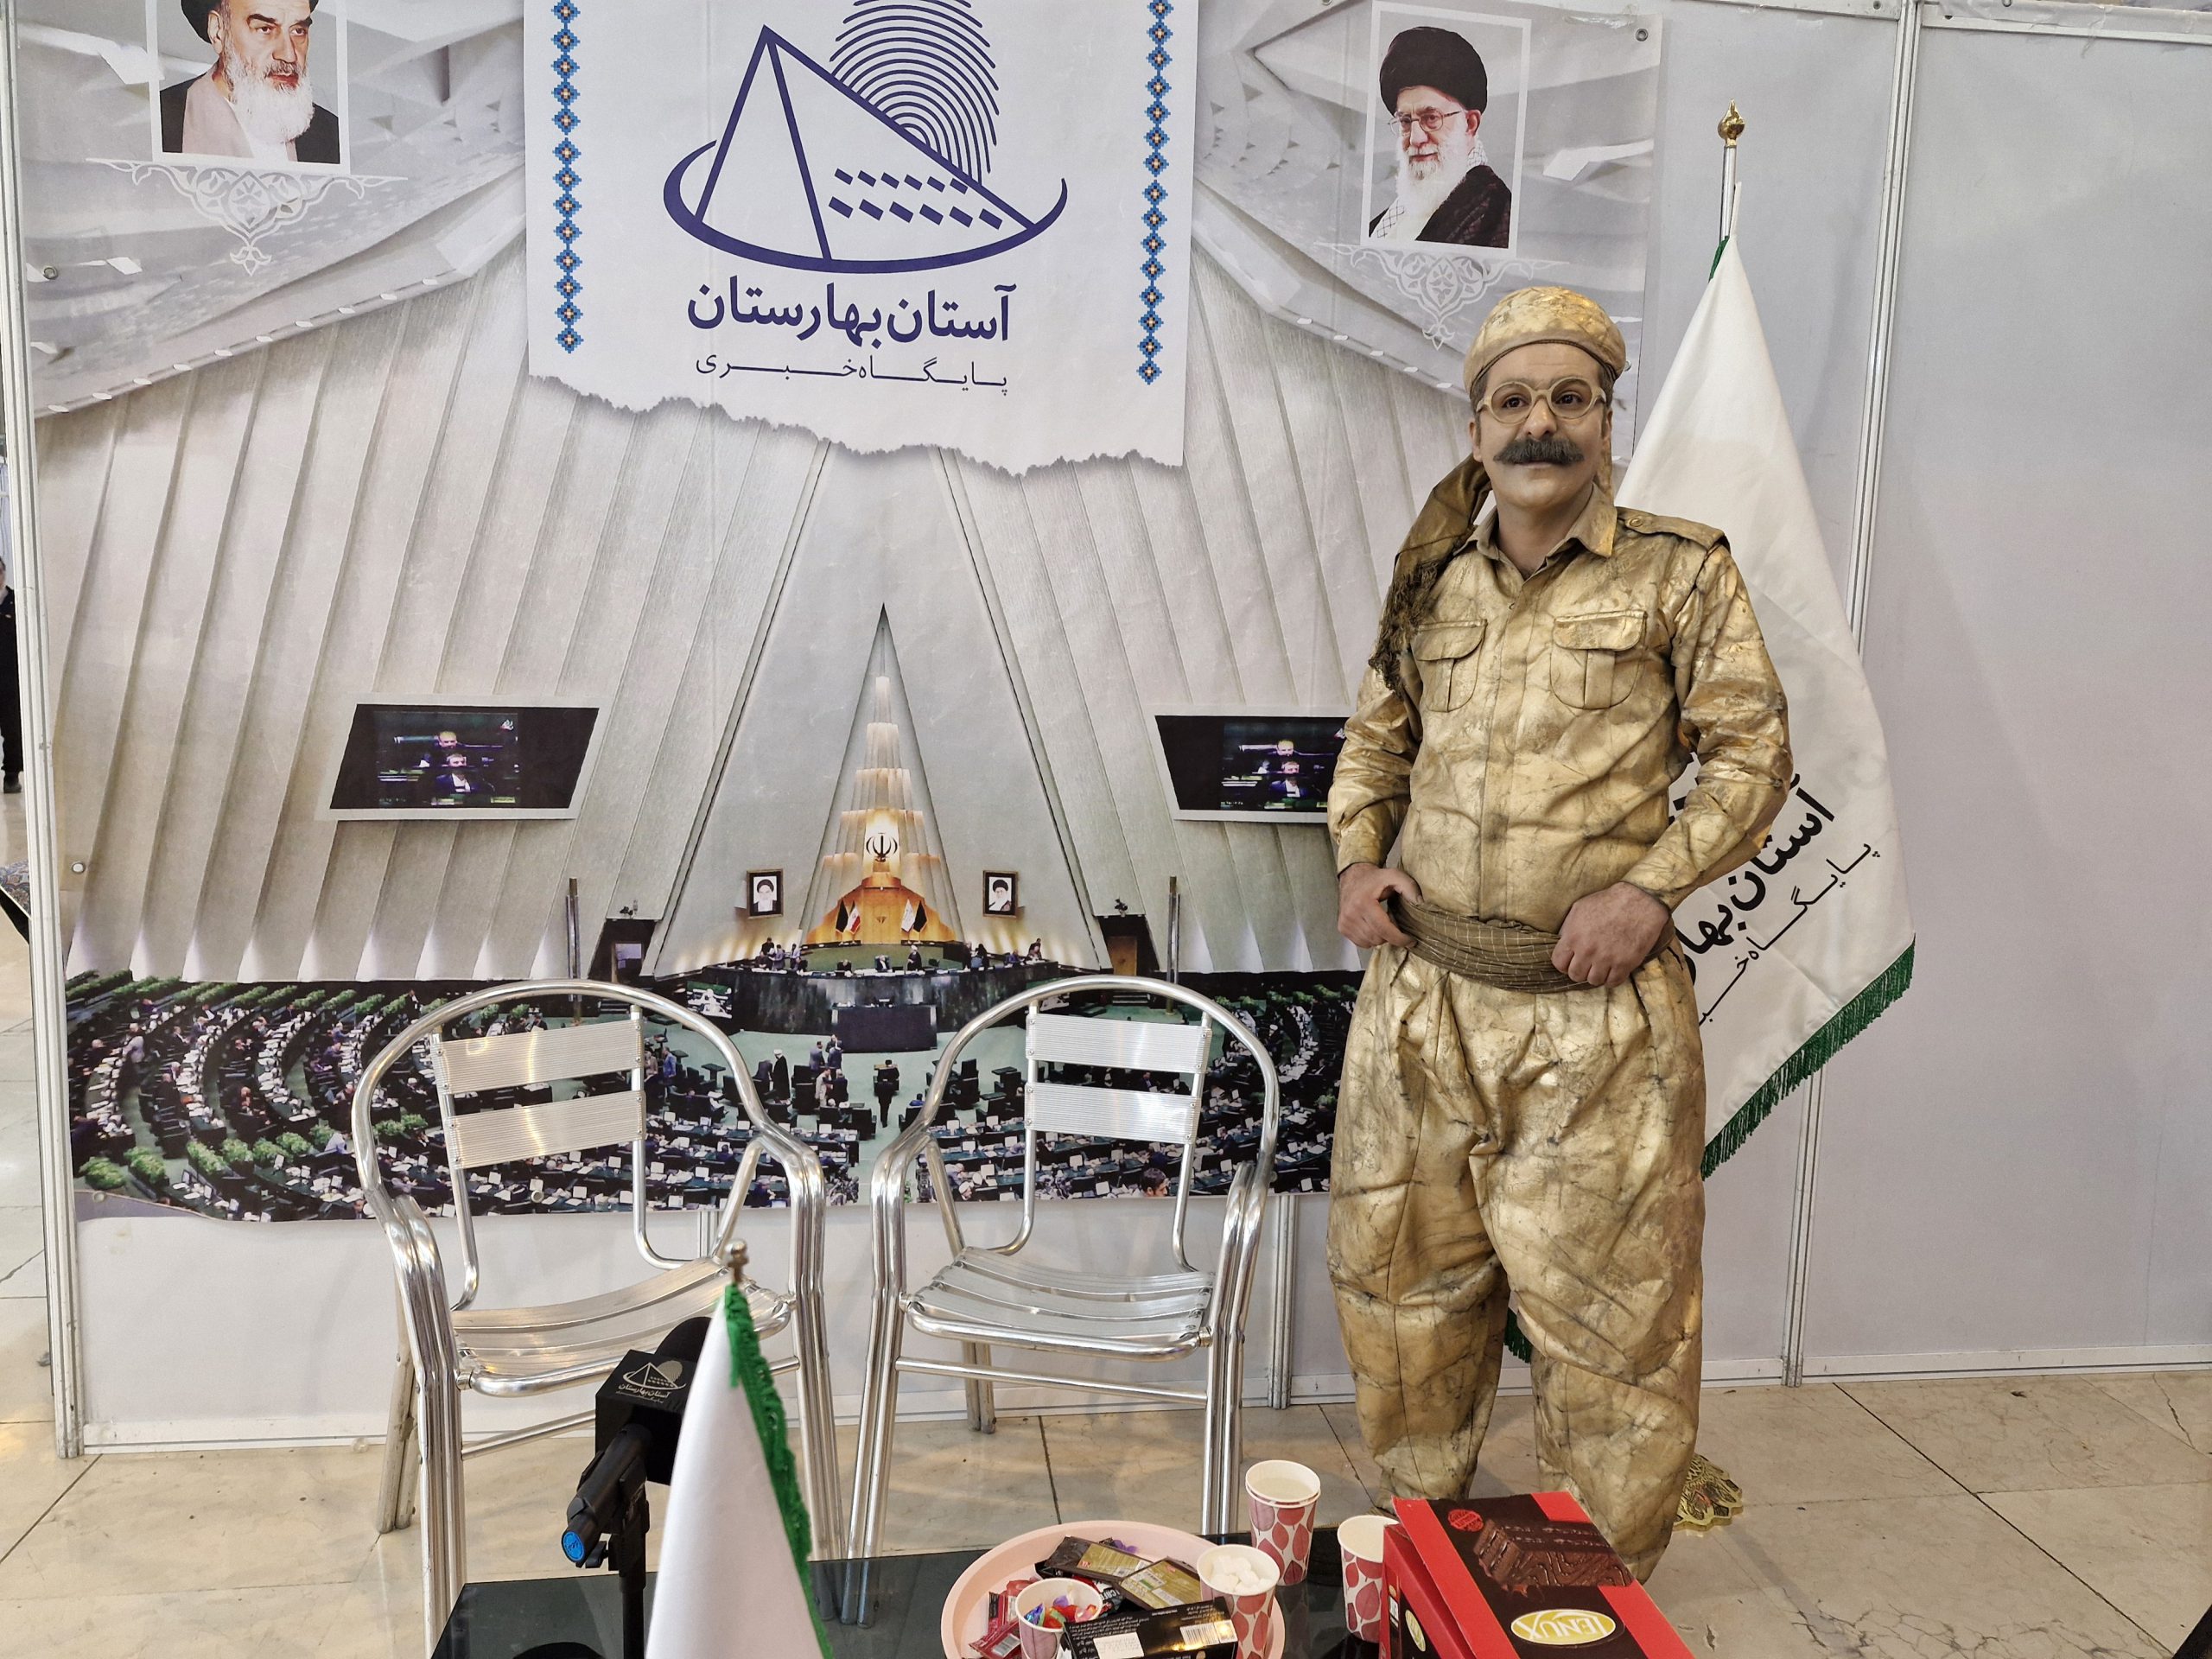 غرفه آستان بهارستان در بیست و چهارمین نمایشگاه رسانه های ایران